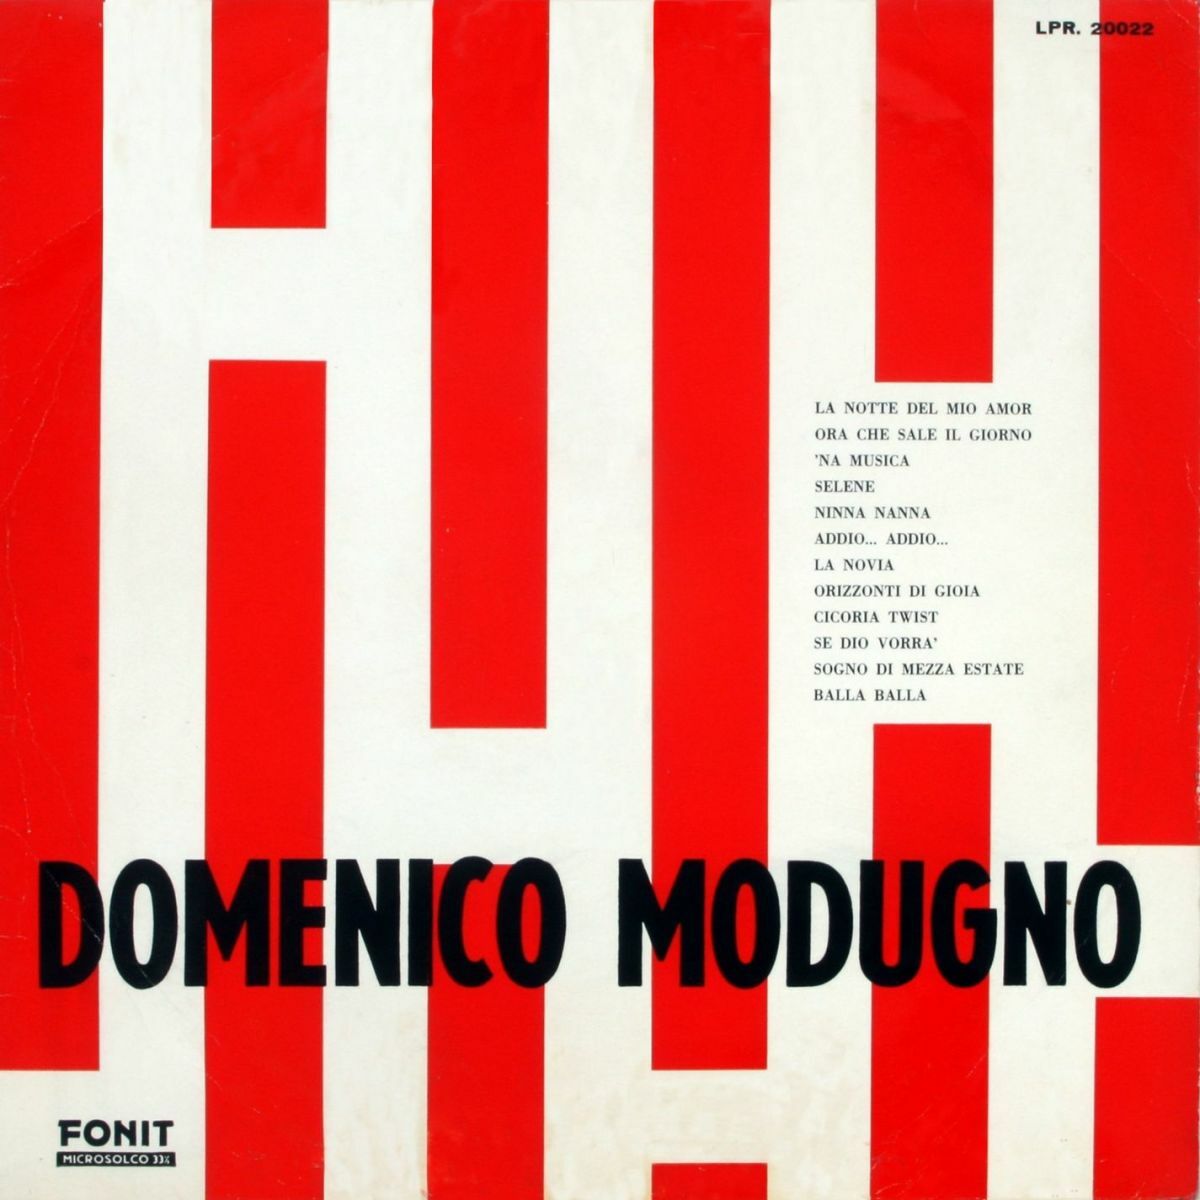 Domenico Modugno: albums